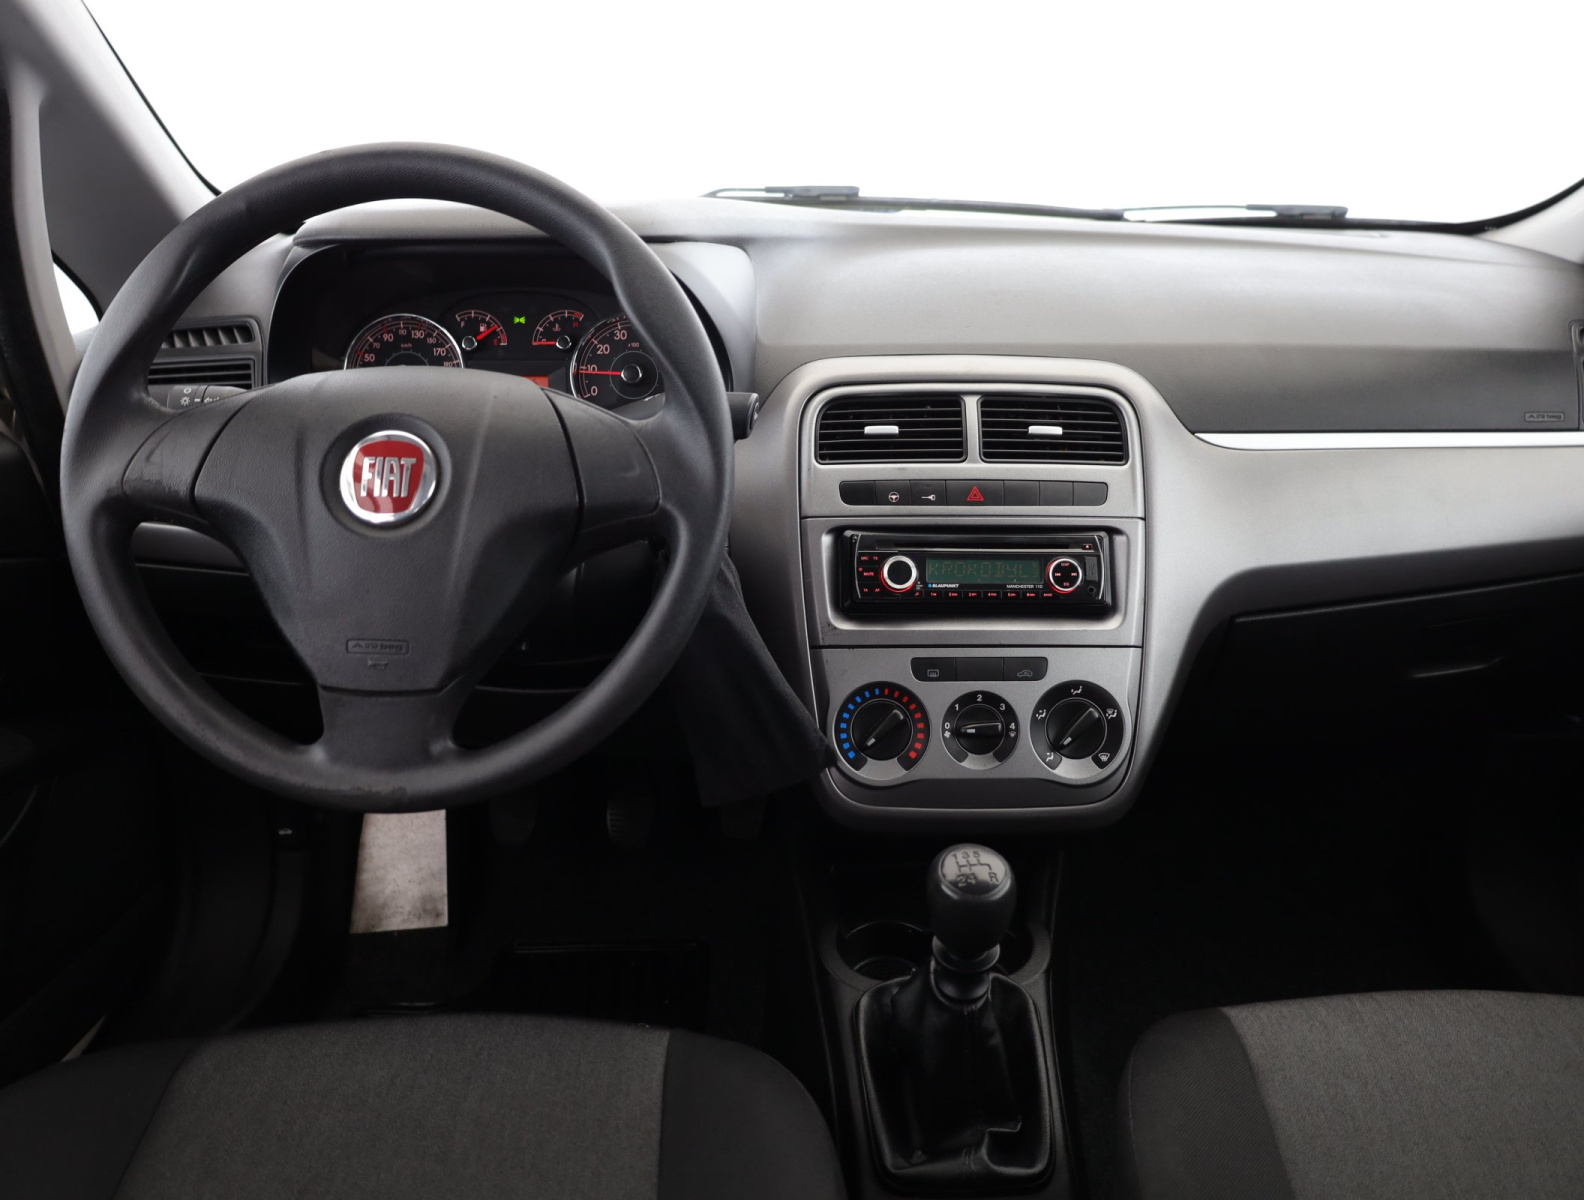 Fiat Punto, 2012, 1.2, 51kW